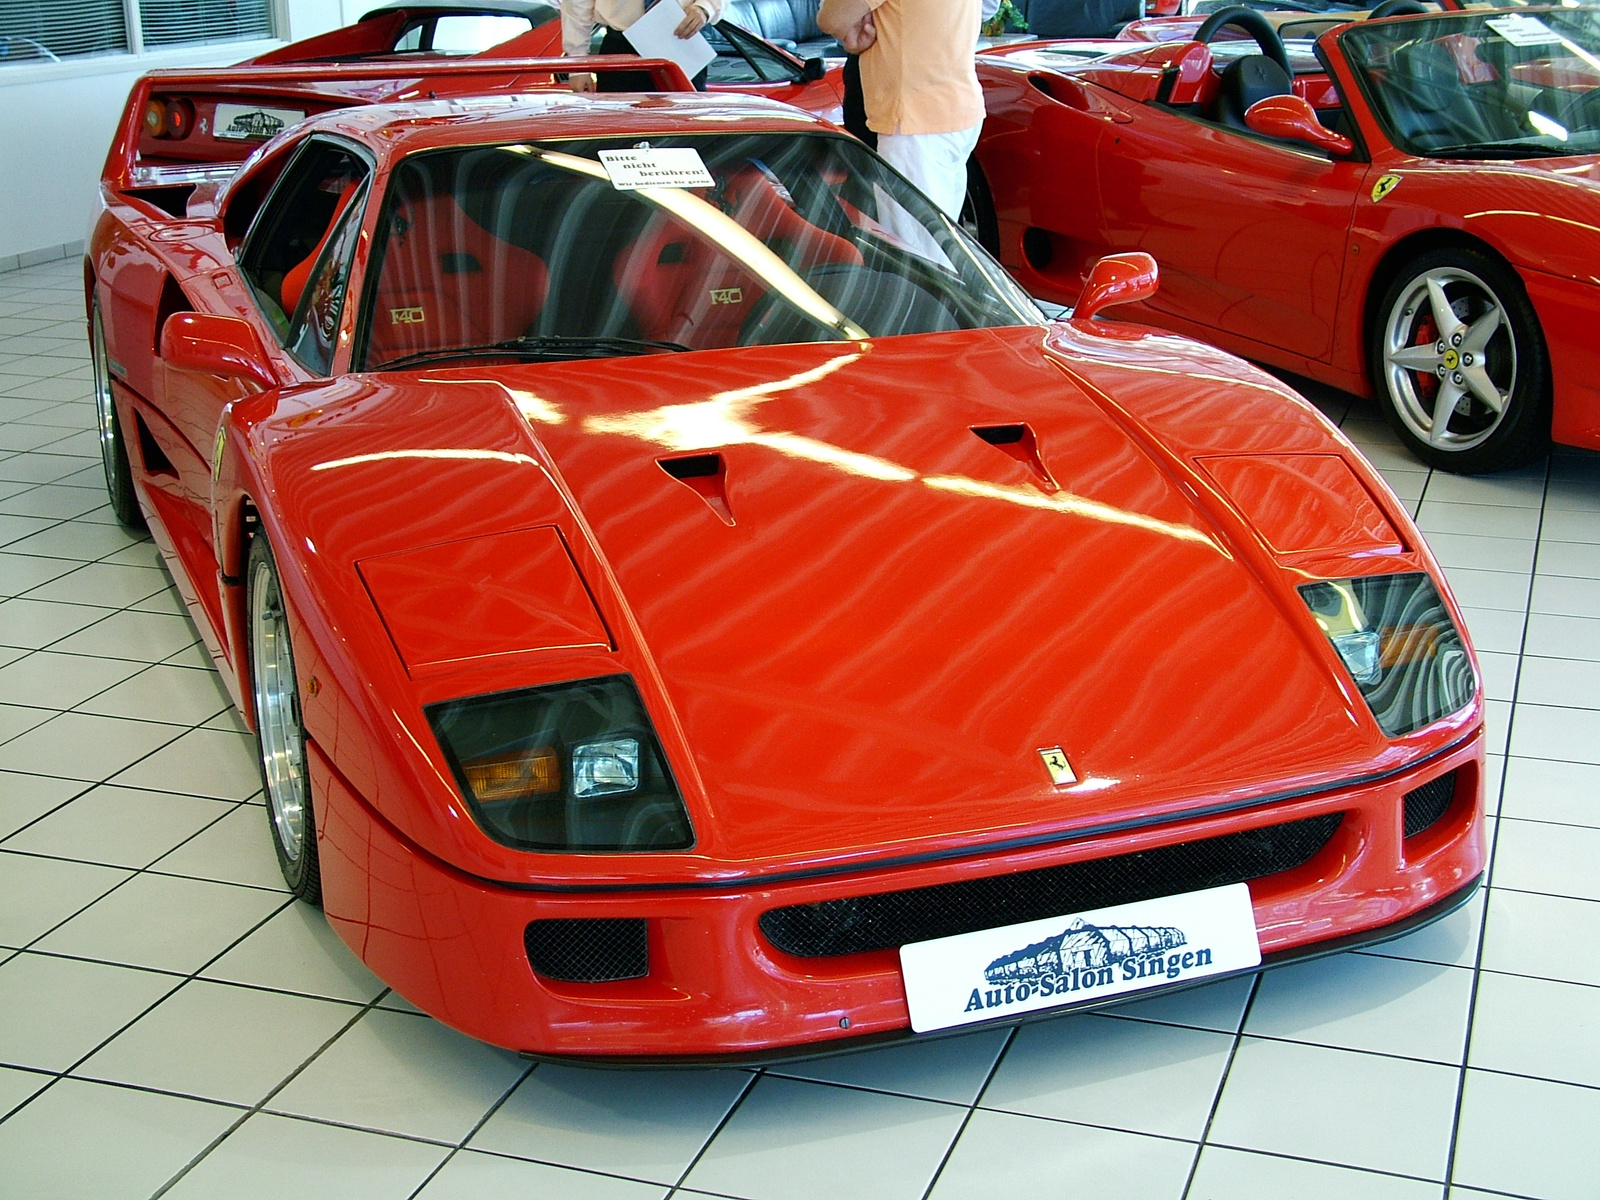 Ferrari (1)